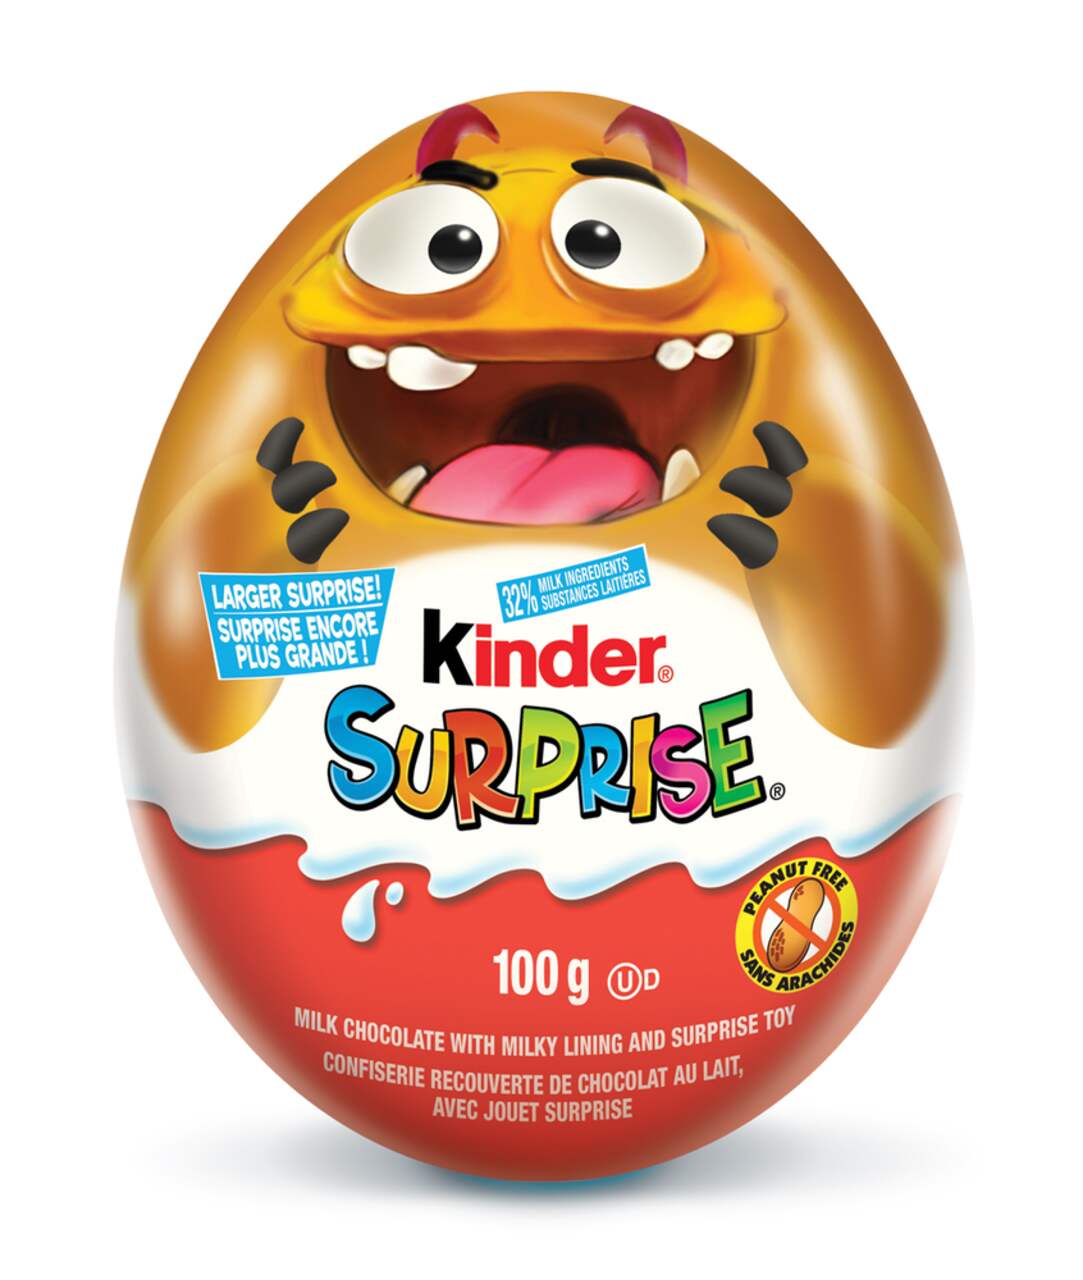 Giant Kinder Surprise Egg